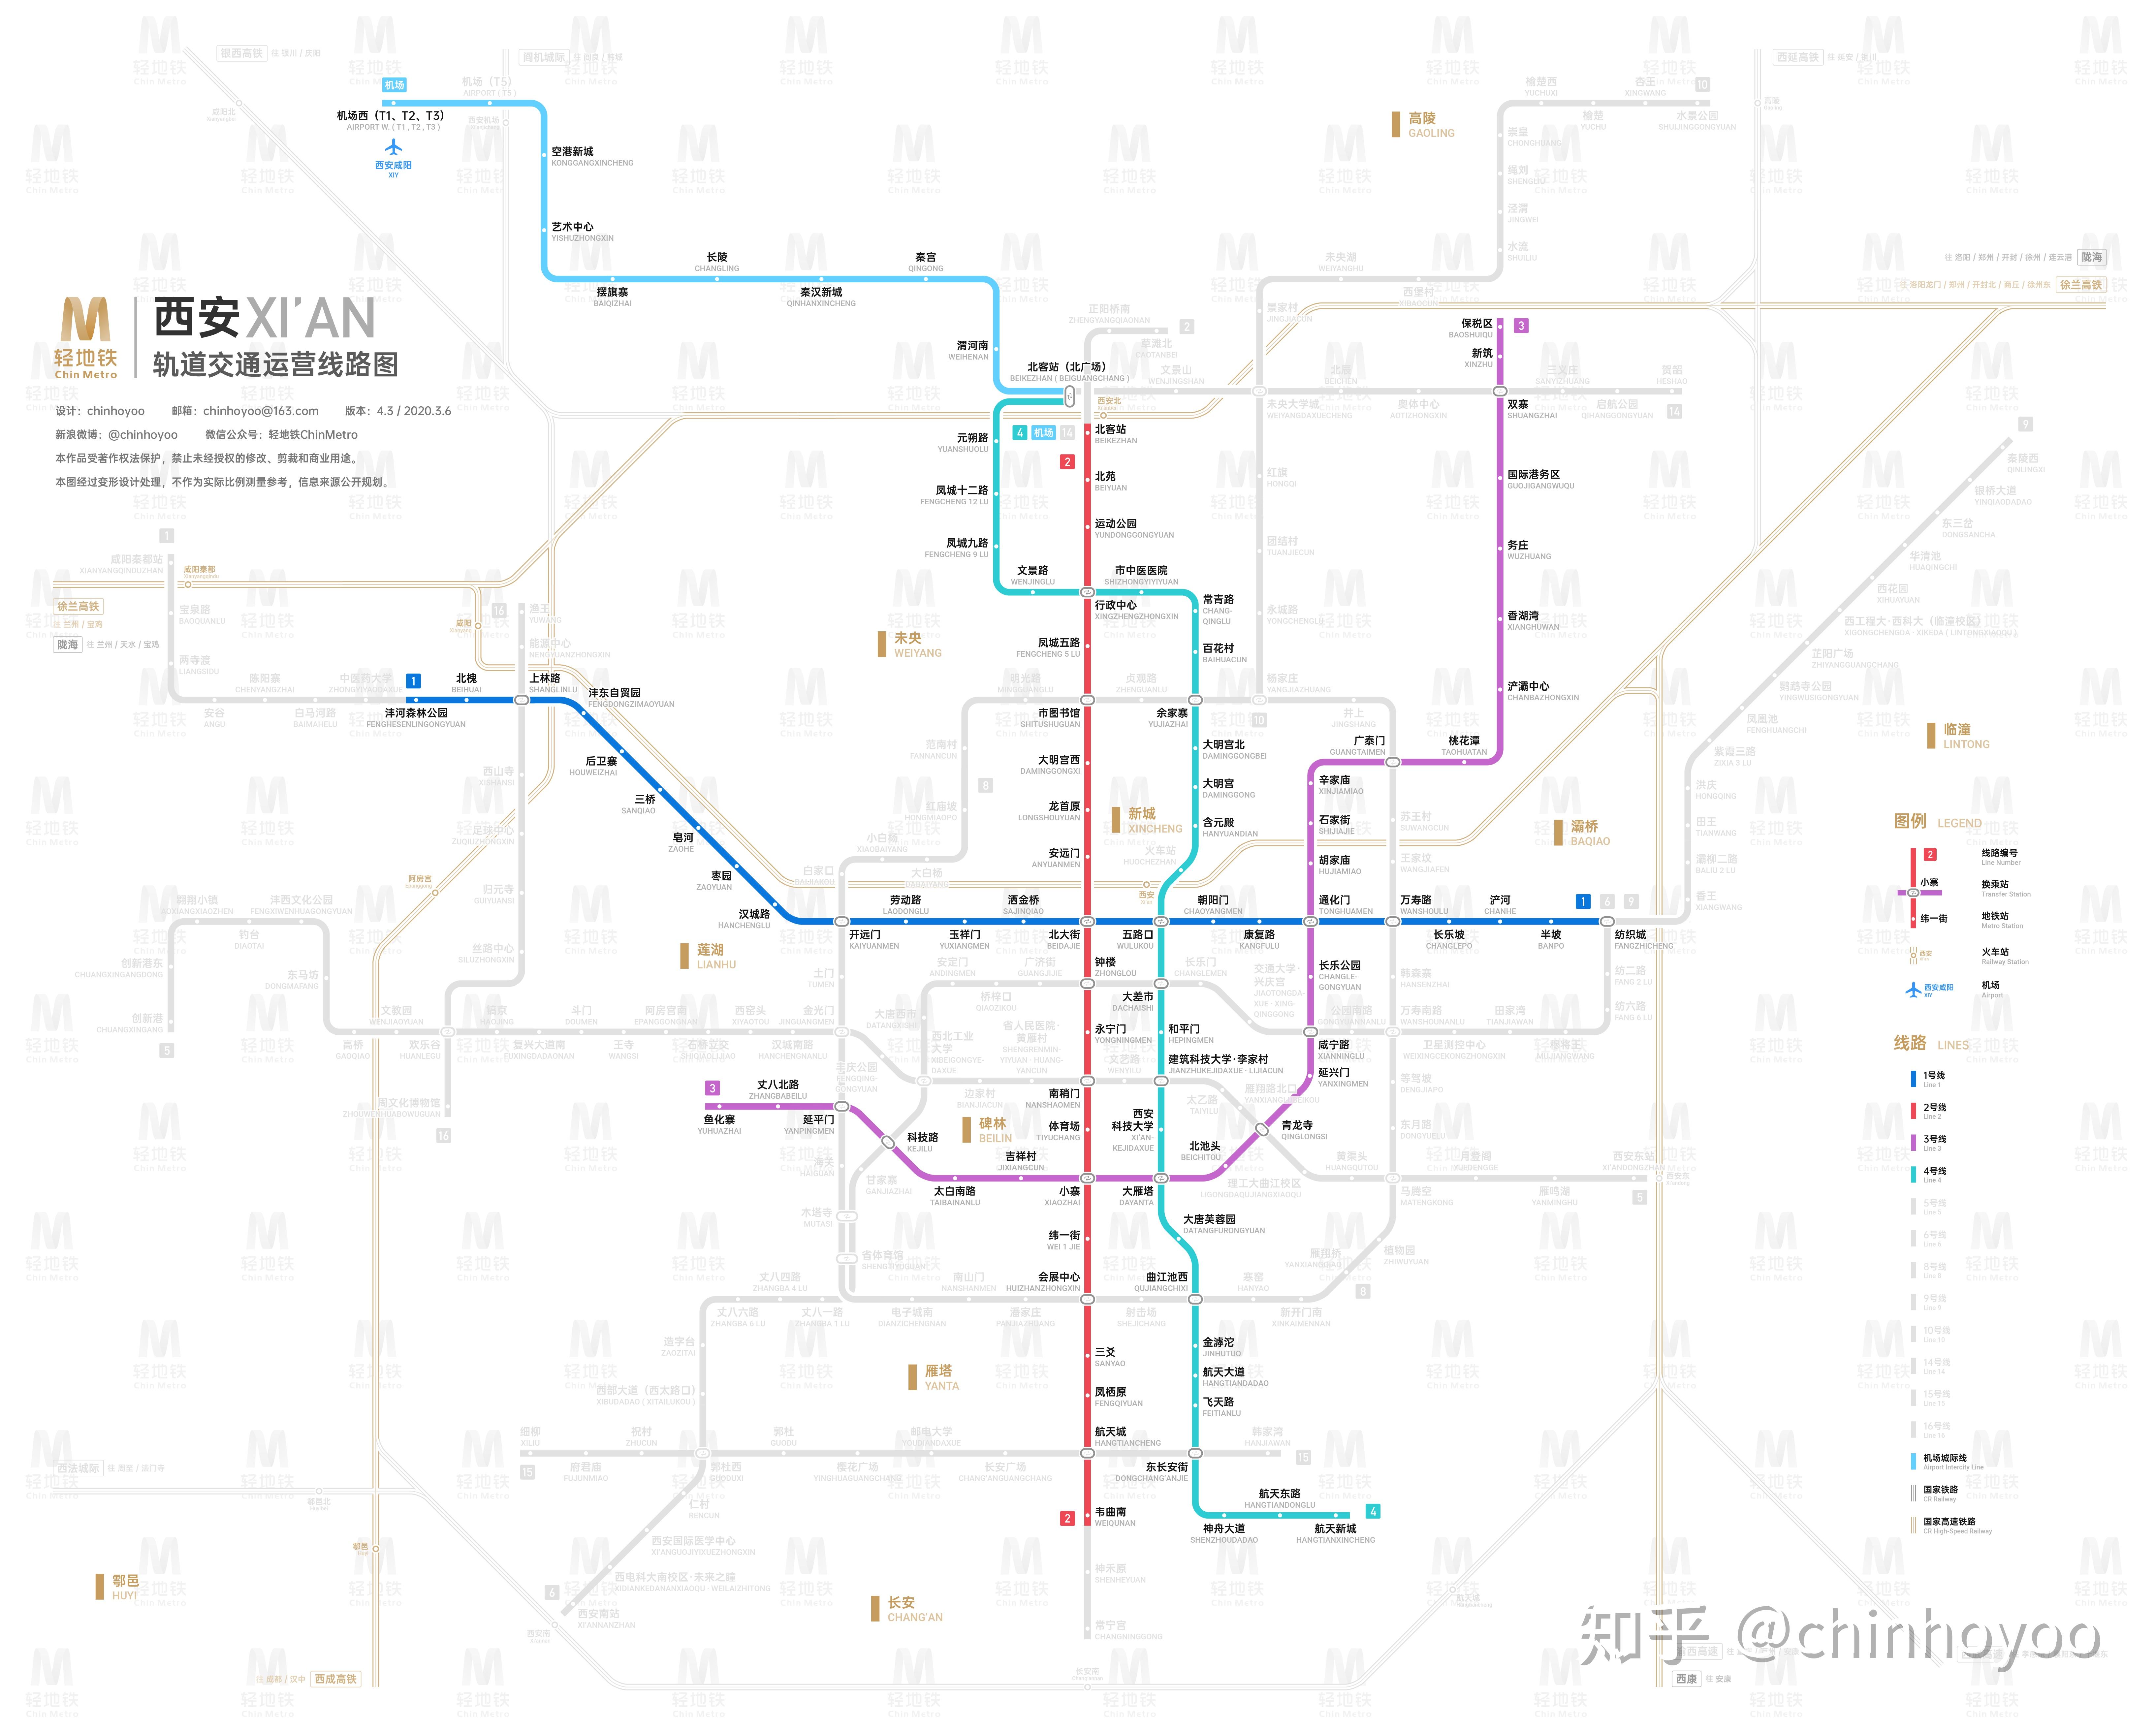 西安轨道交通图 2020 / 2025+ - 知乎